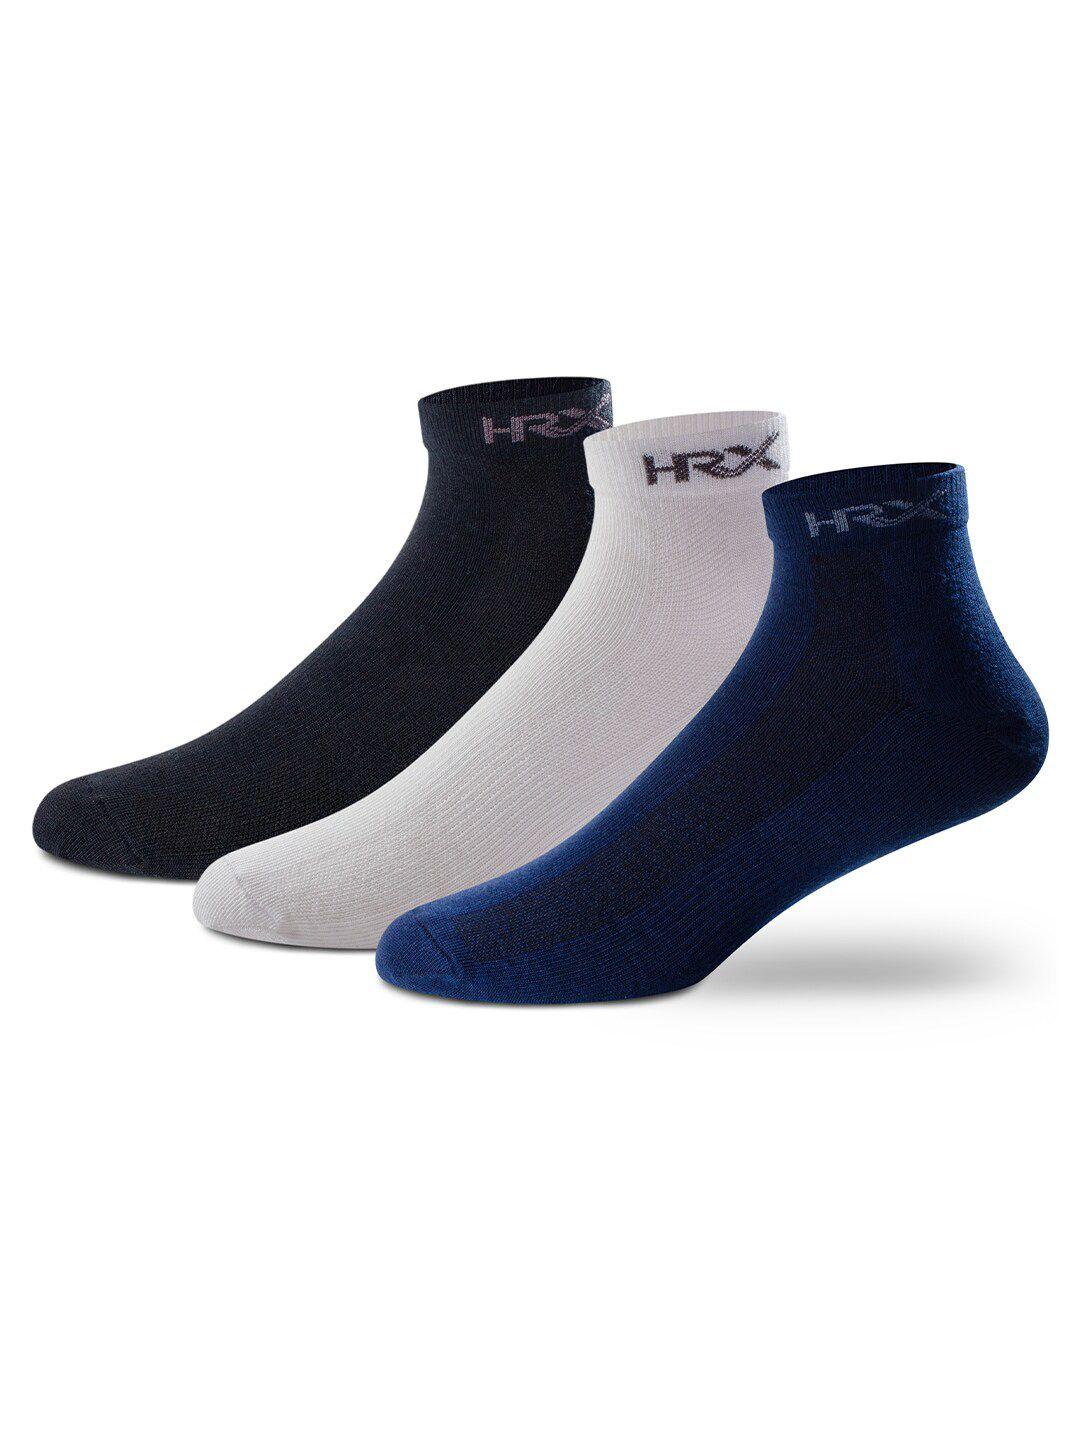 hrx-by-hrithik-roshan-men-pack-of-3-white-&-blue-ankle-length-socks